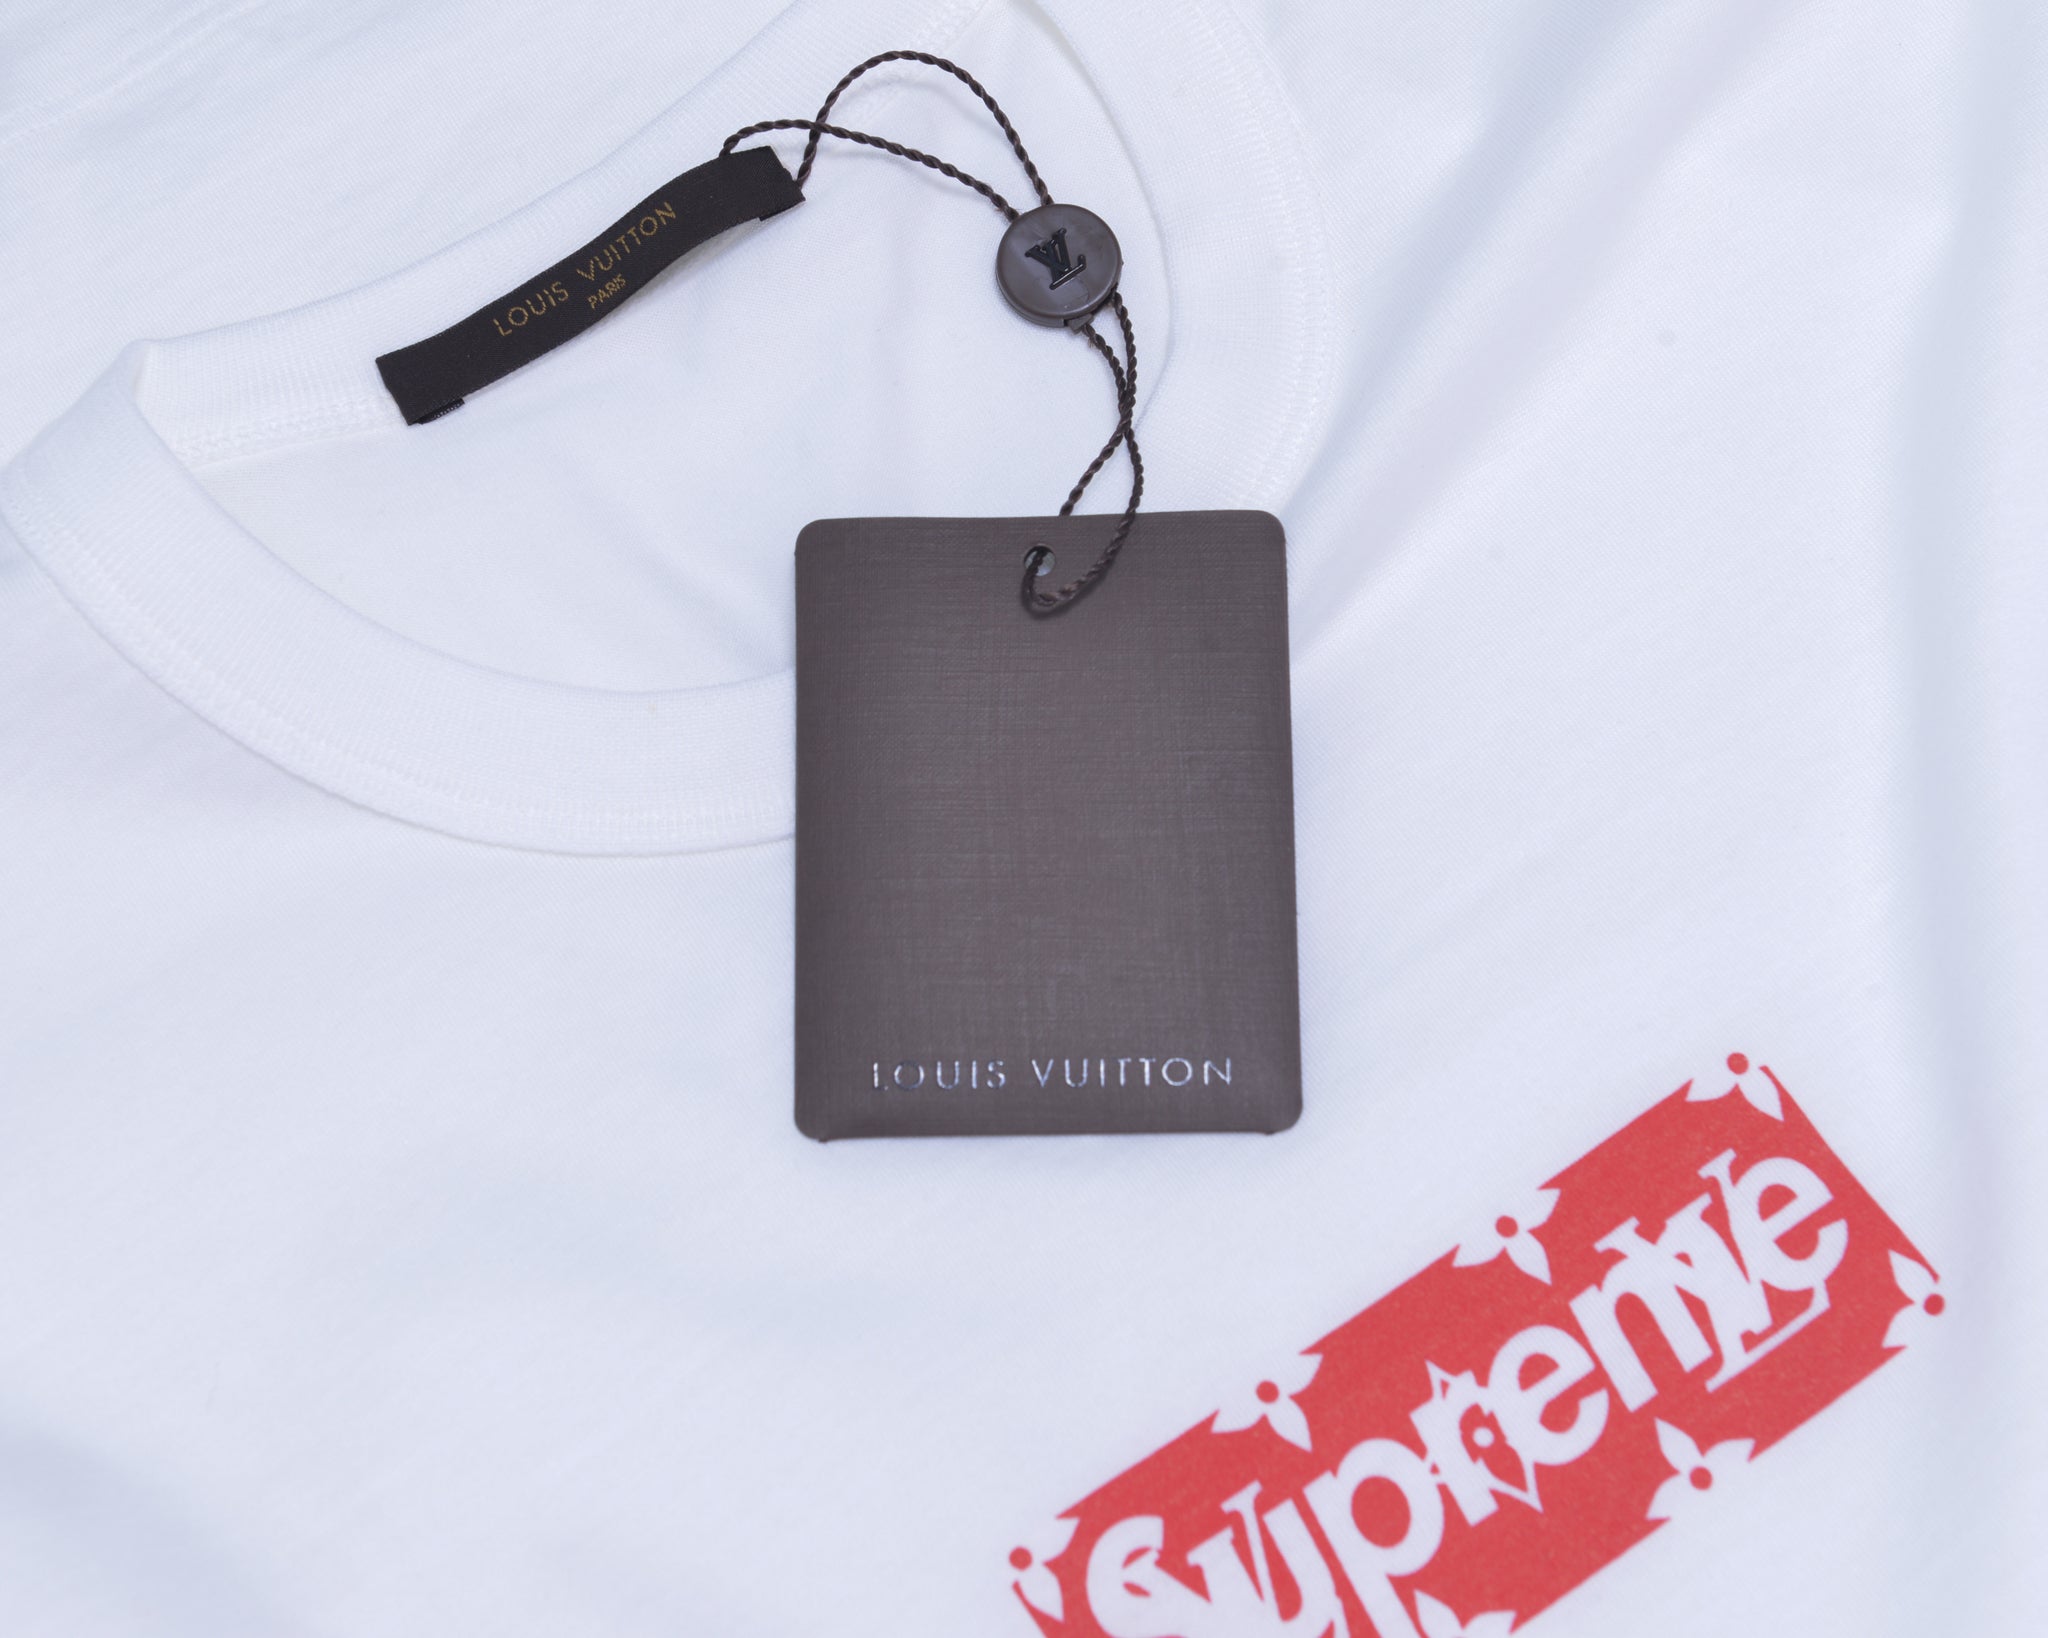 Supreme X Louis Vuitton T-Shirt - Supreme Shirts